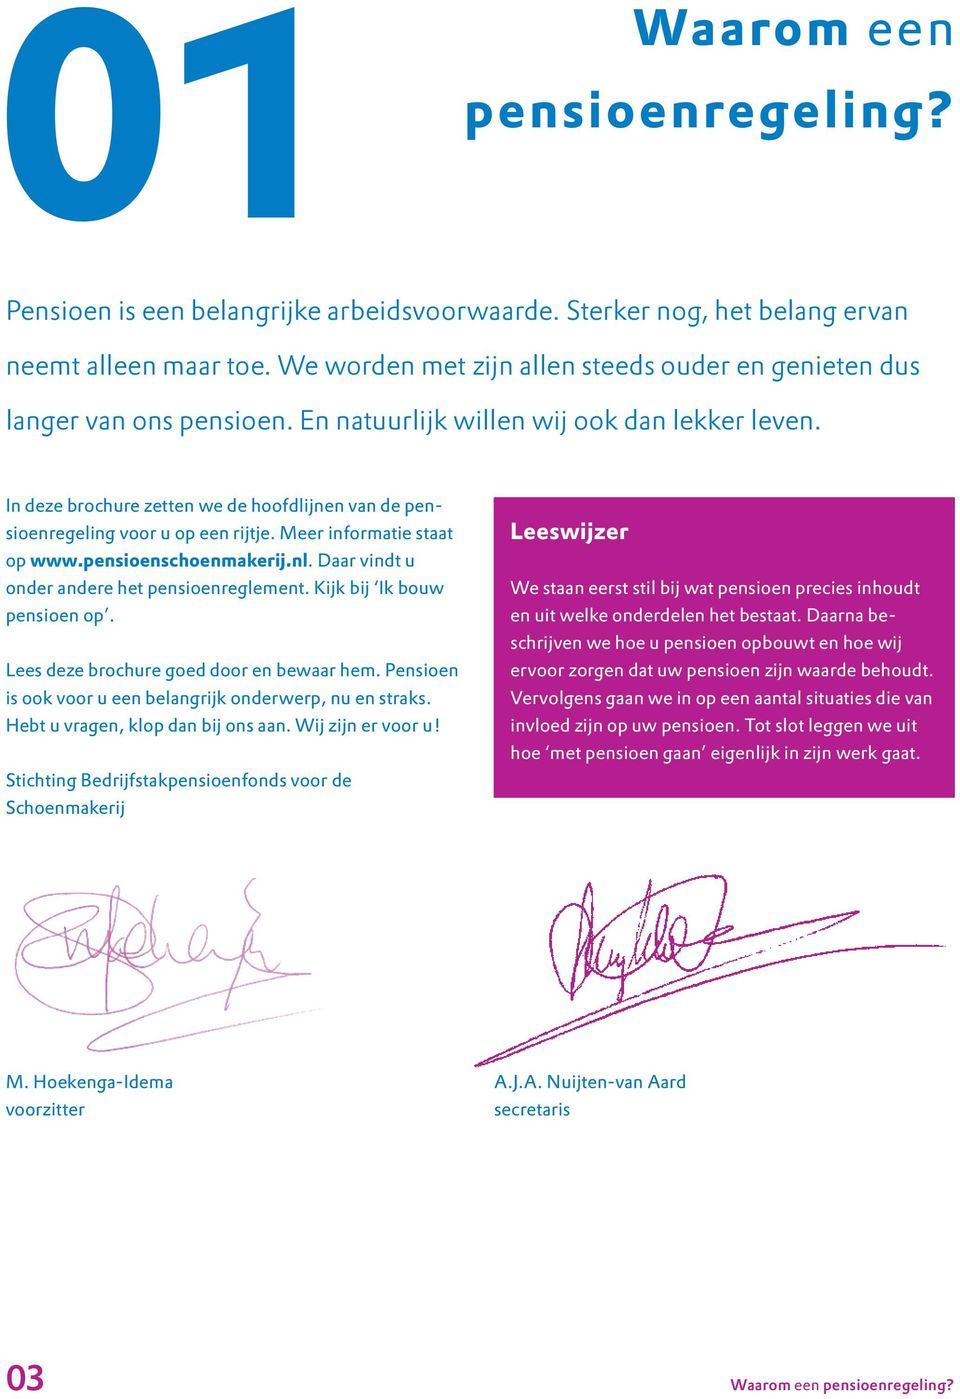 In deze brochure zetten we de hoofdlijnen van de pensioenregeling voor u op een rijtje. Meer informatie staat op www.pensioenschoenmakerij.nl. Daar vindt u onder andere het pensioenreglement.